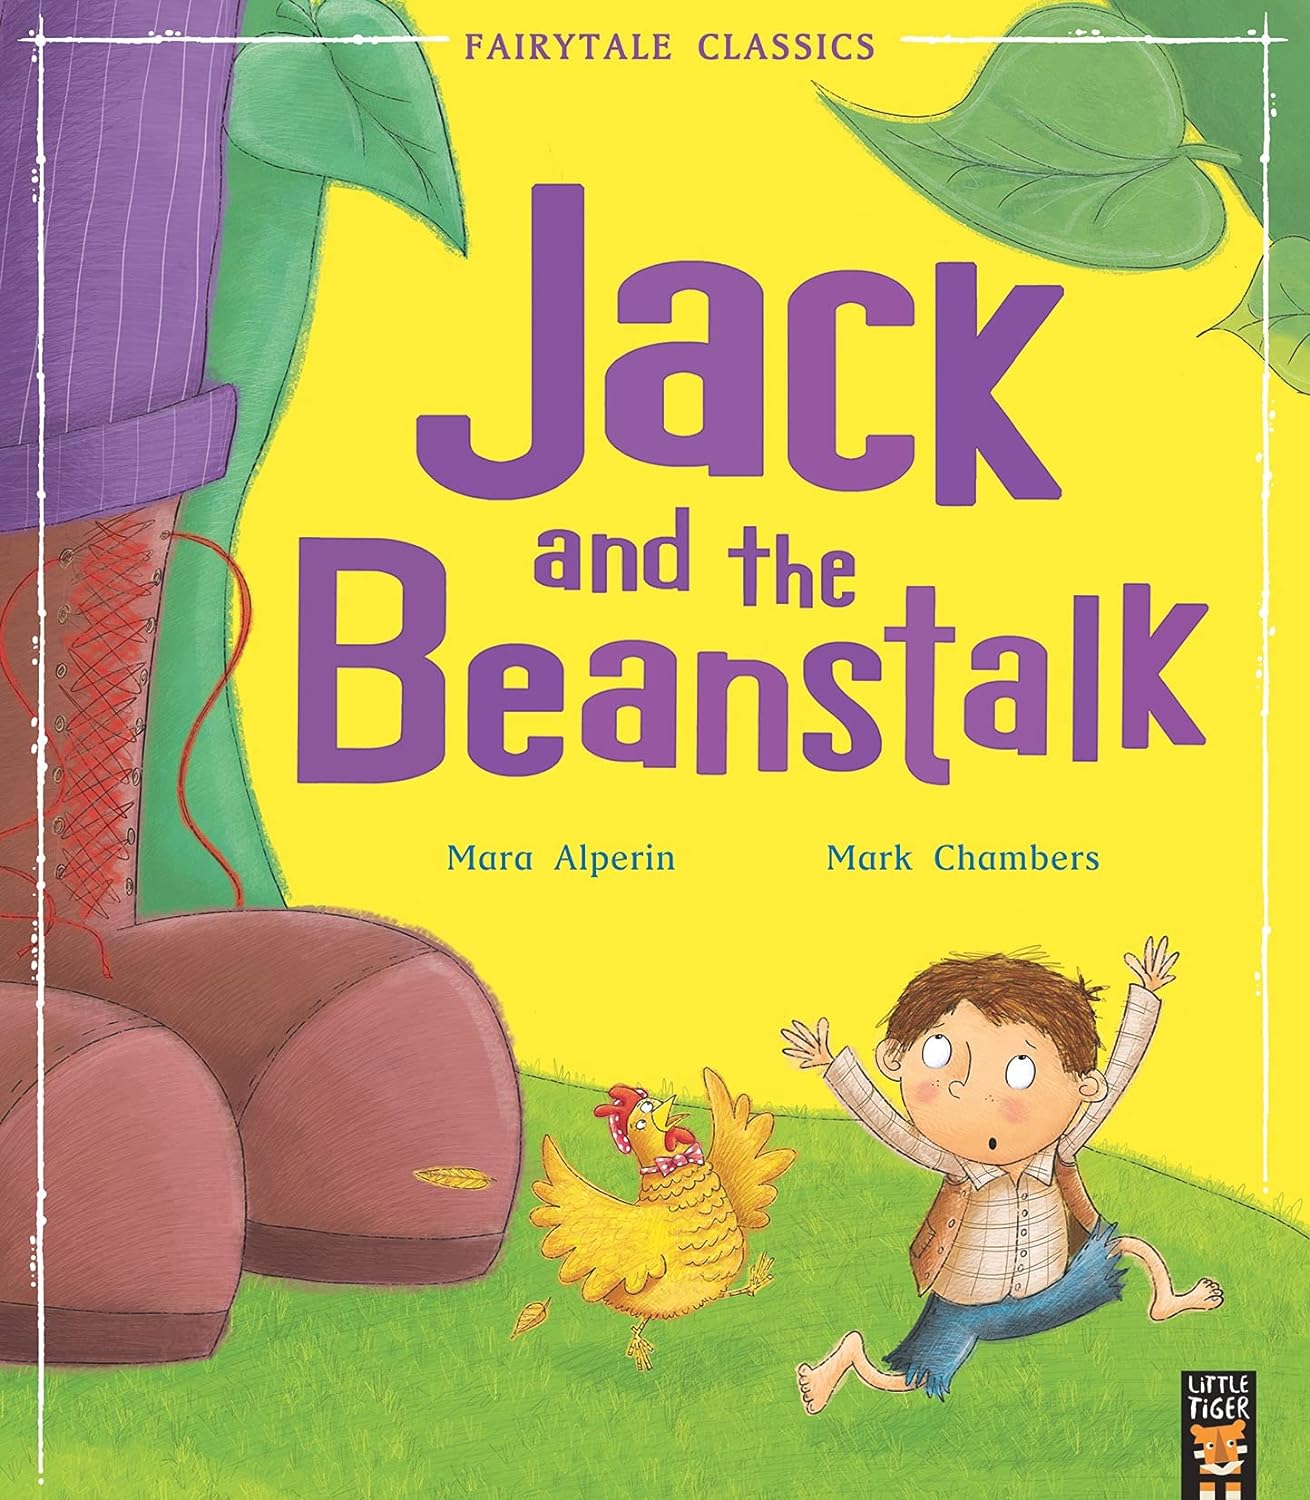 进口英文原版Jack and the Beanstalk 杰克和魔豆 儿童英文启蒙读本 Mara Alperin著作 Little Tiger Press Group出版平装绘本